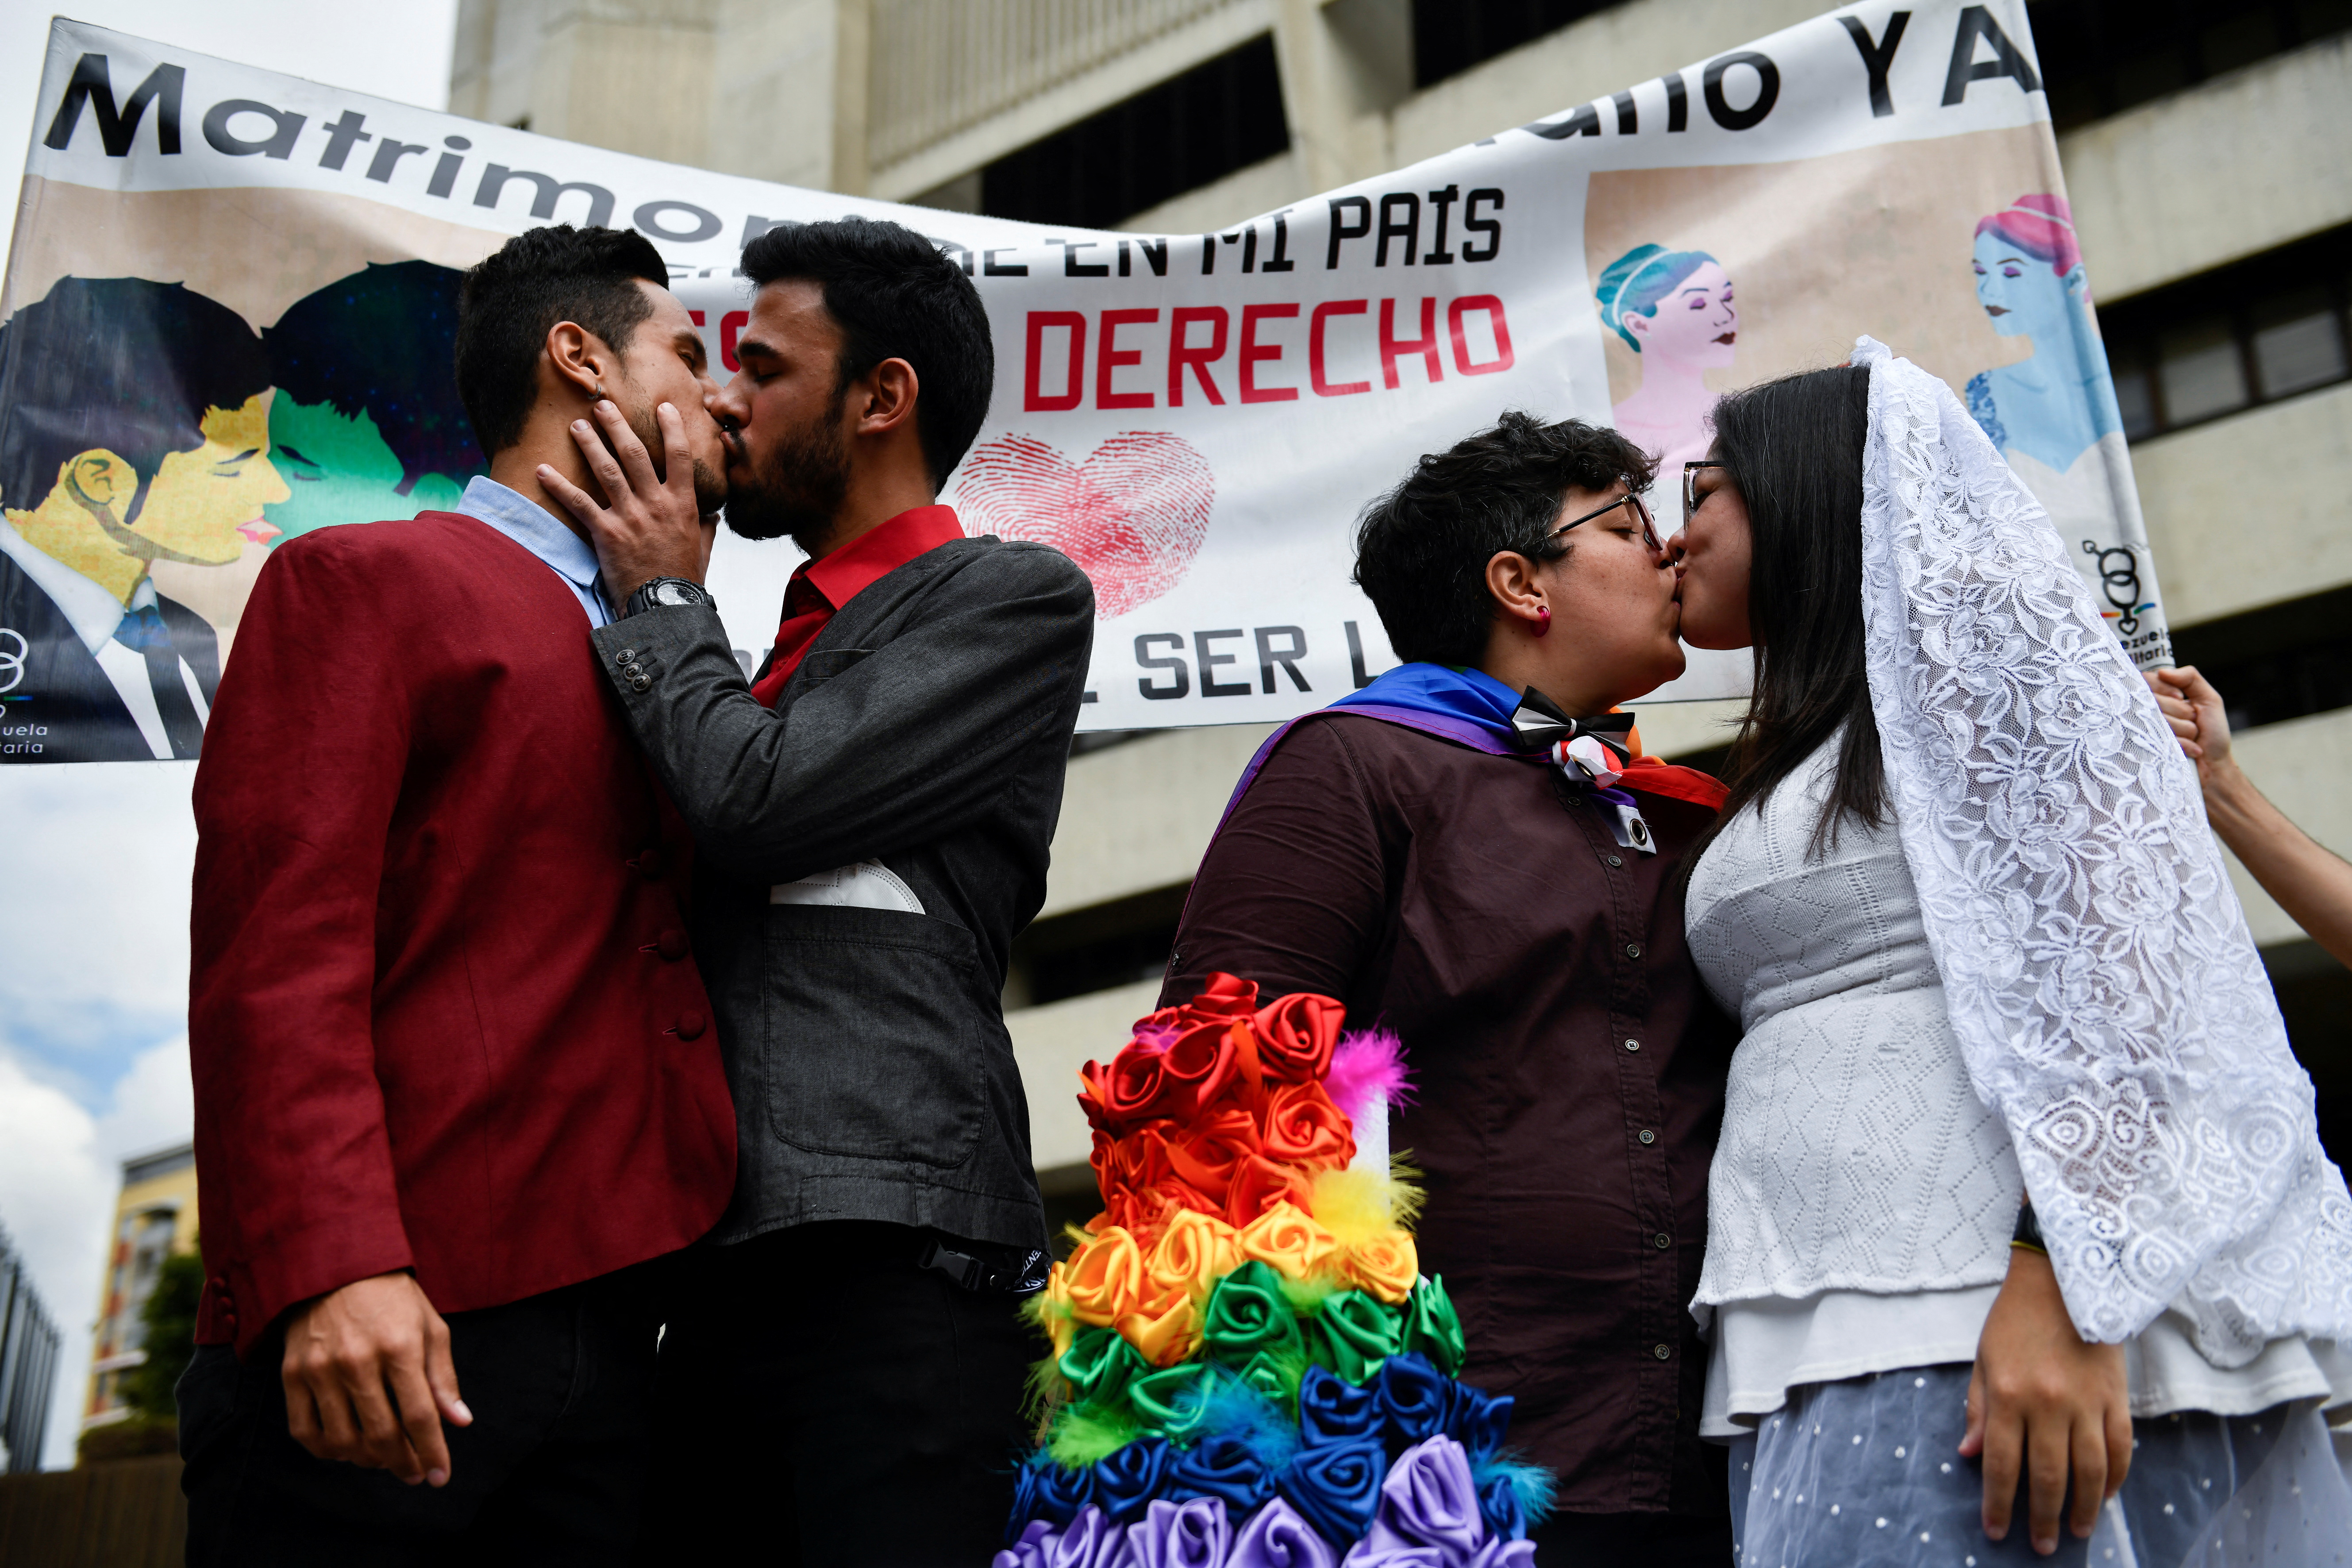 La población LGBT+ de Venezuela ha exigido que se aprueben el matrimonio igualitario y otras leyes para su protección, sin ser escuchadas. (REUTERS/Gaby Oraa)